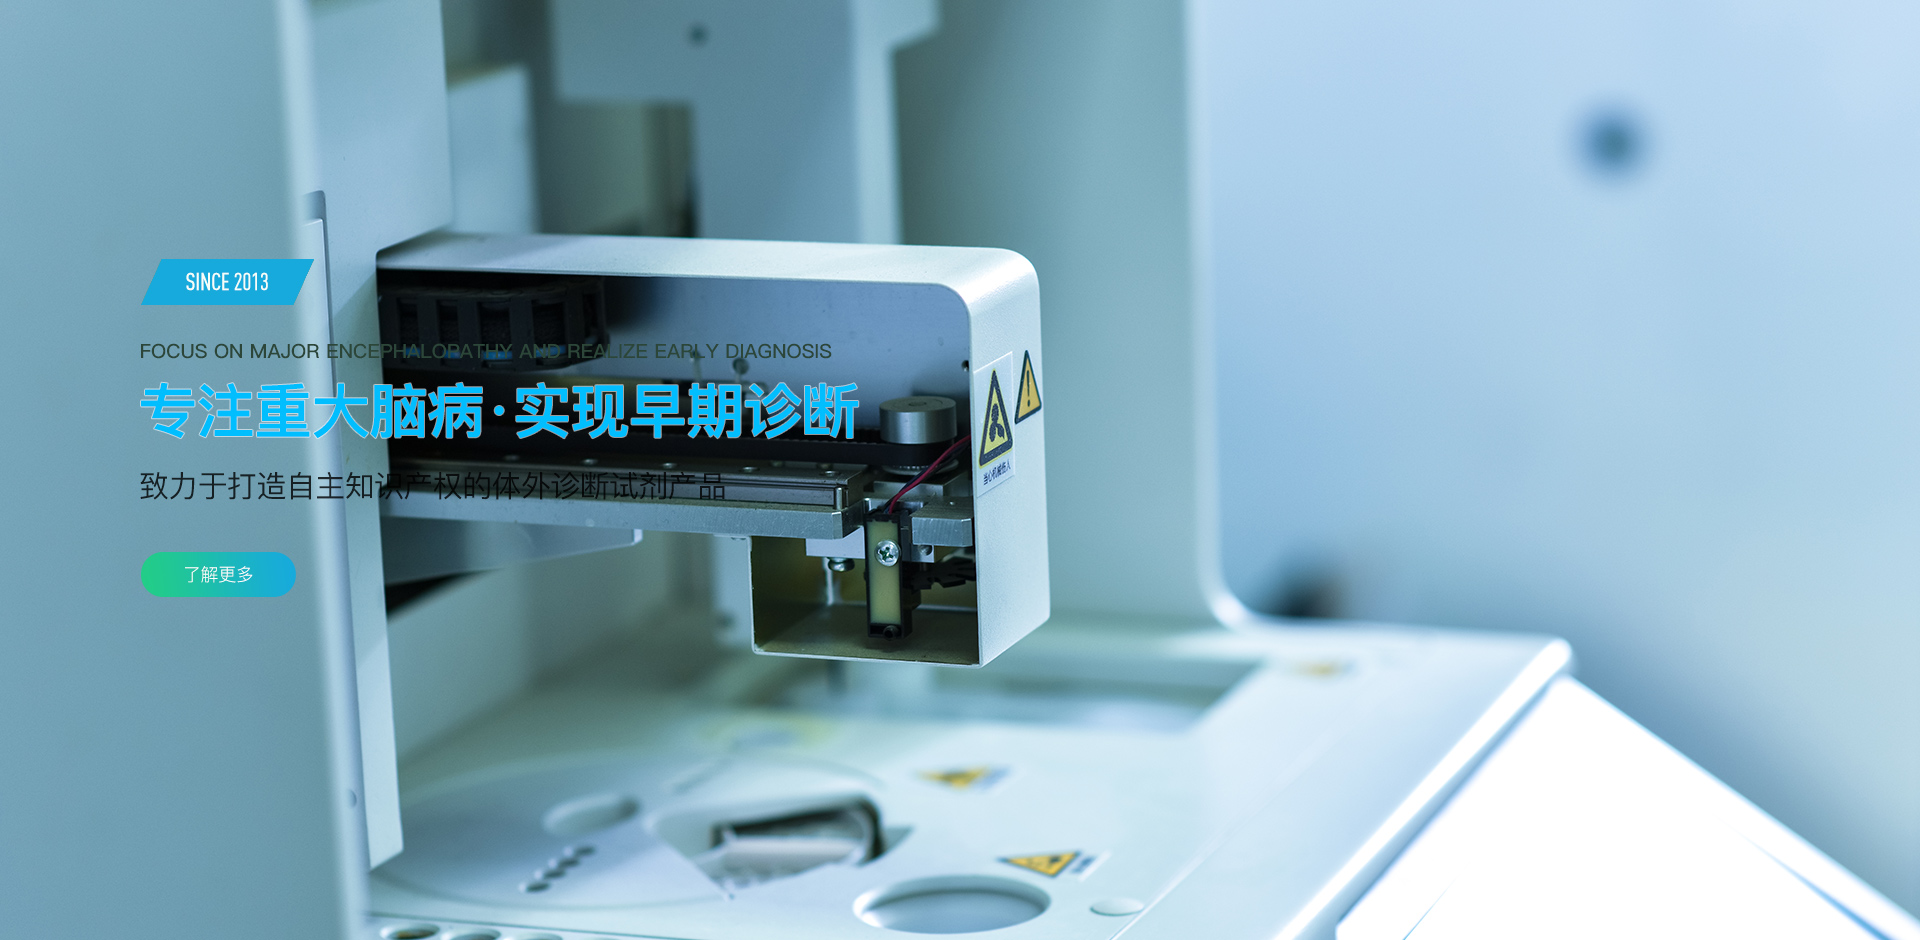 北京尊龙凯时 、北京尊龙凯时生物科技有限公司 、纳米颗粒跟踪分析仪 、电化学发光 、流式荧光 、流式细胞仪